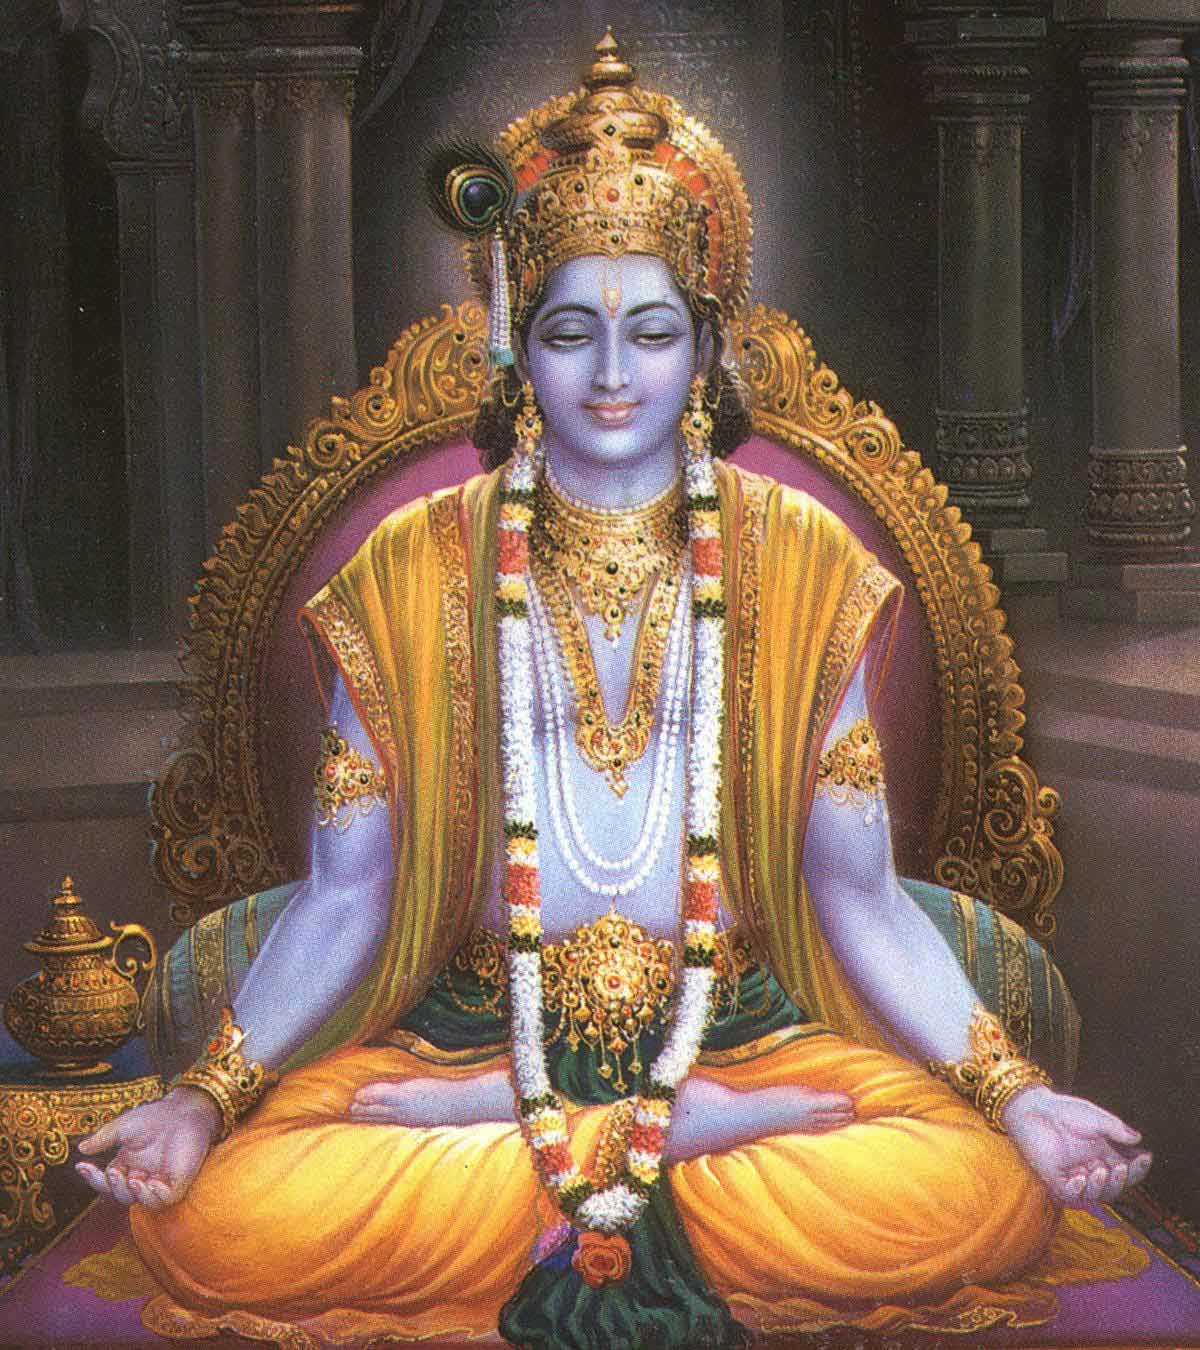 Lord Krishna in Meditation